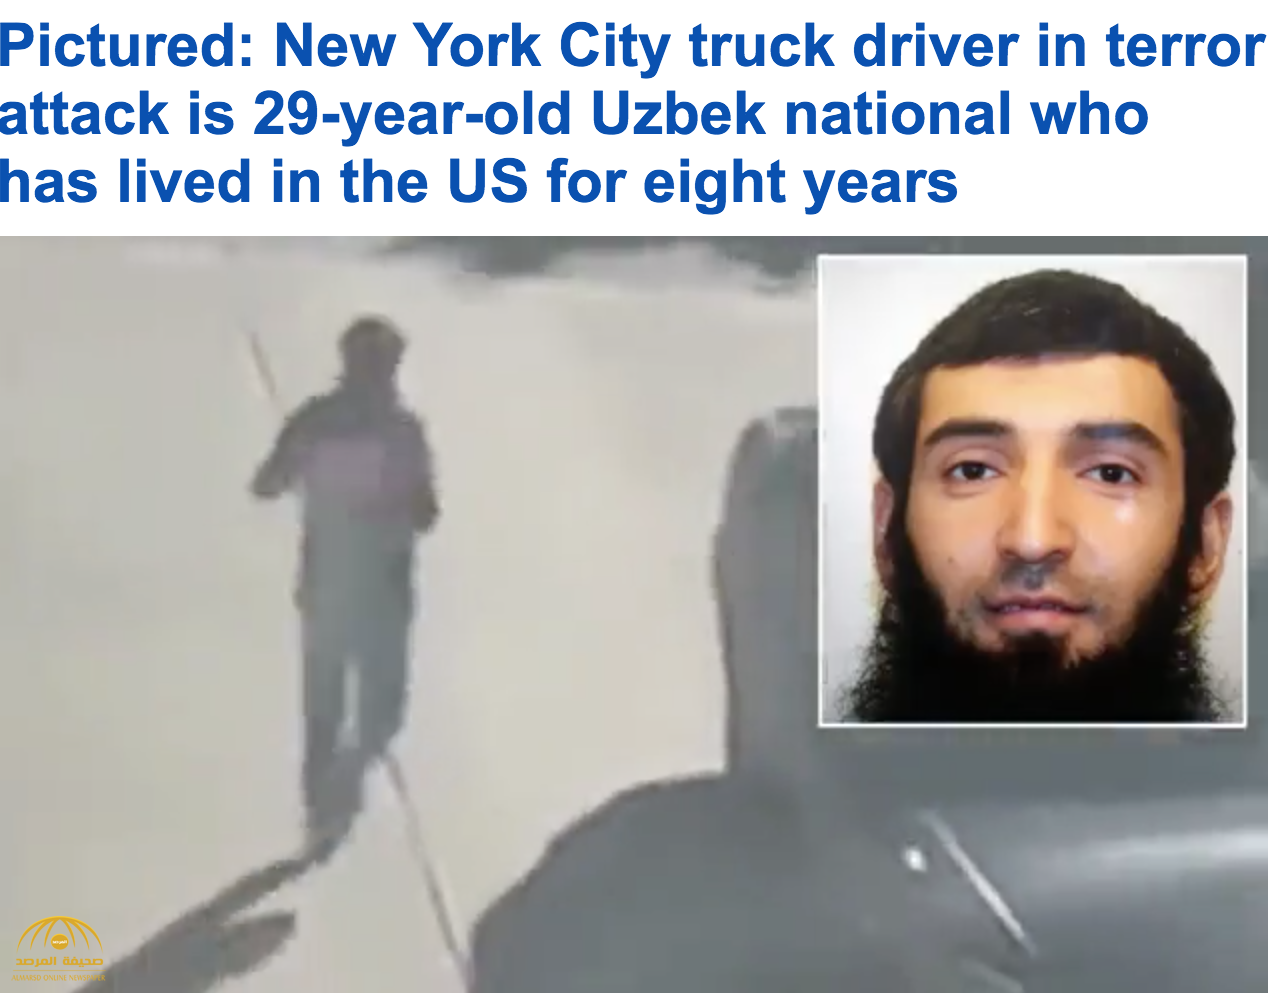 عمدة نيويورك حادث الدهس بمانهاتن عمل إرهابي ..وشهود عيان : سائق الشاحنة صرخ "الله أكبر"